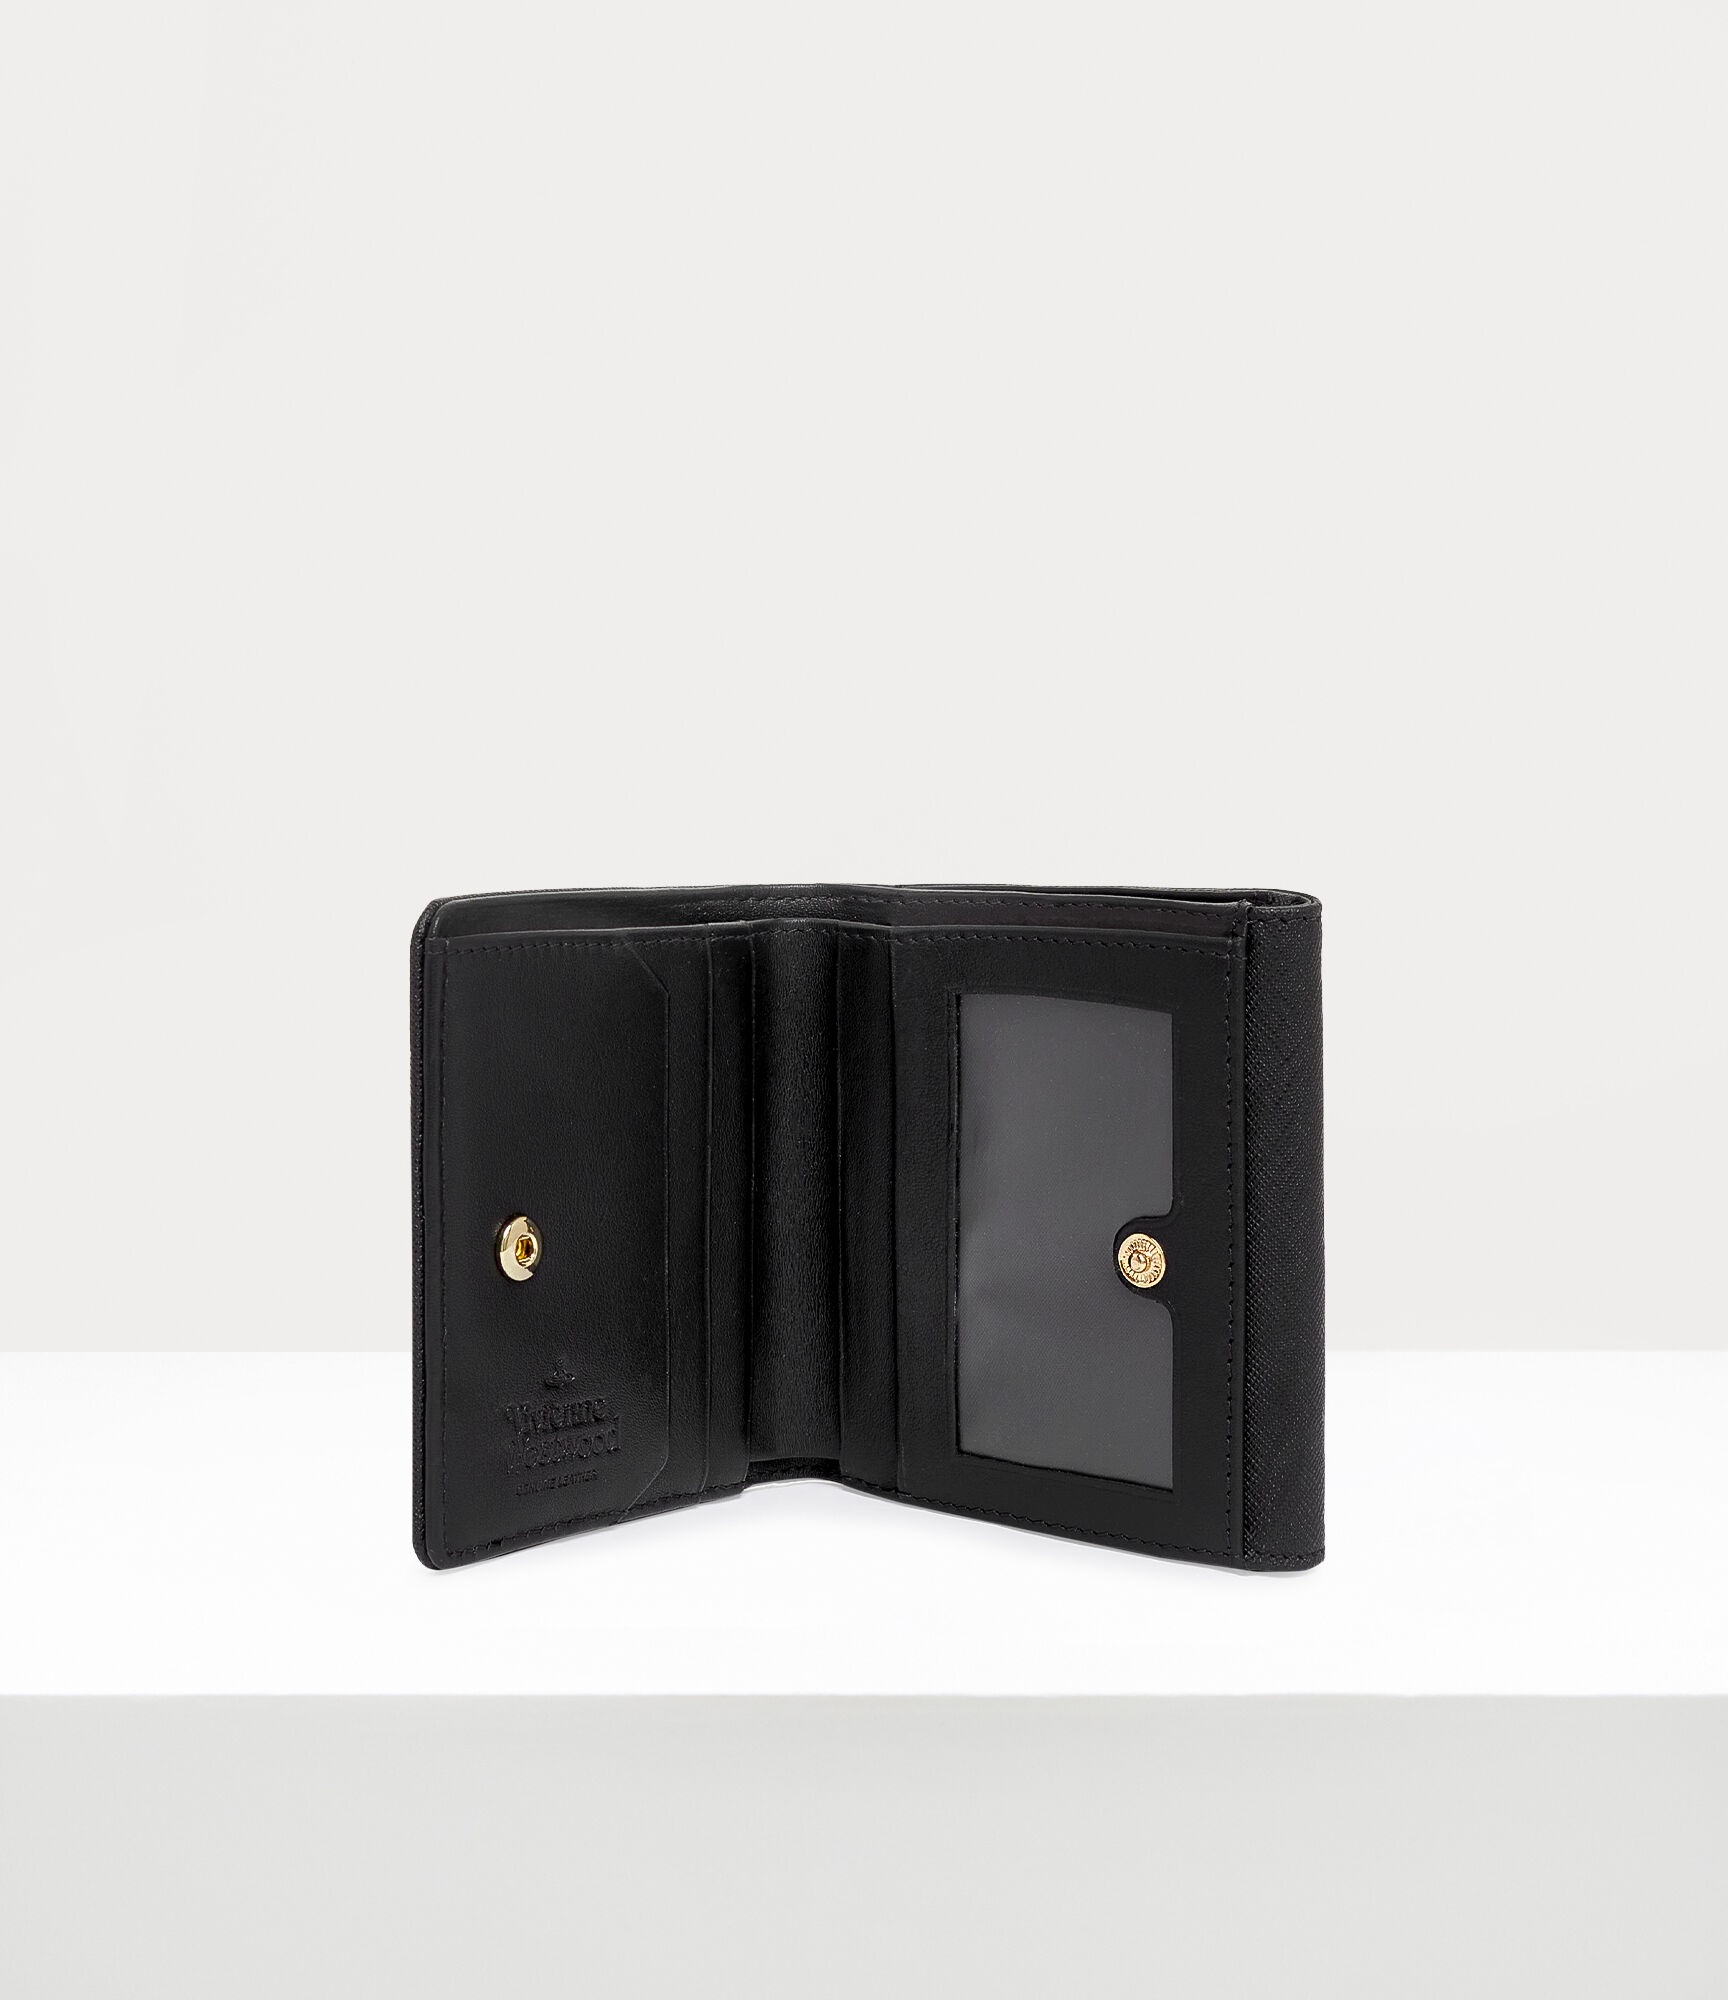 Orb-plaque Saffiano leather wallet, Vivienne Westwood